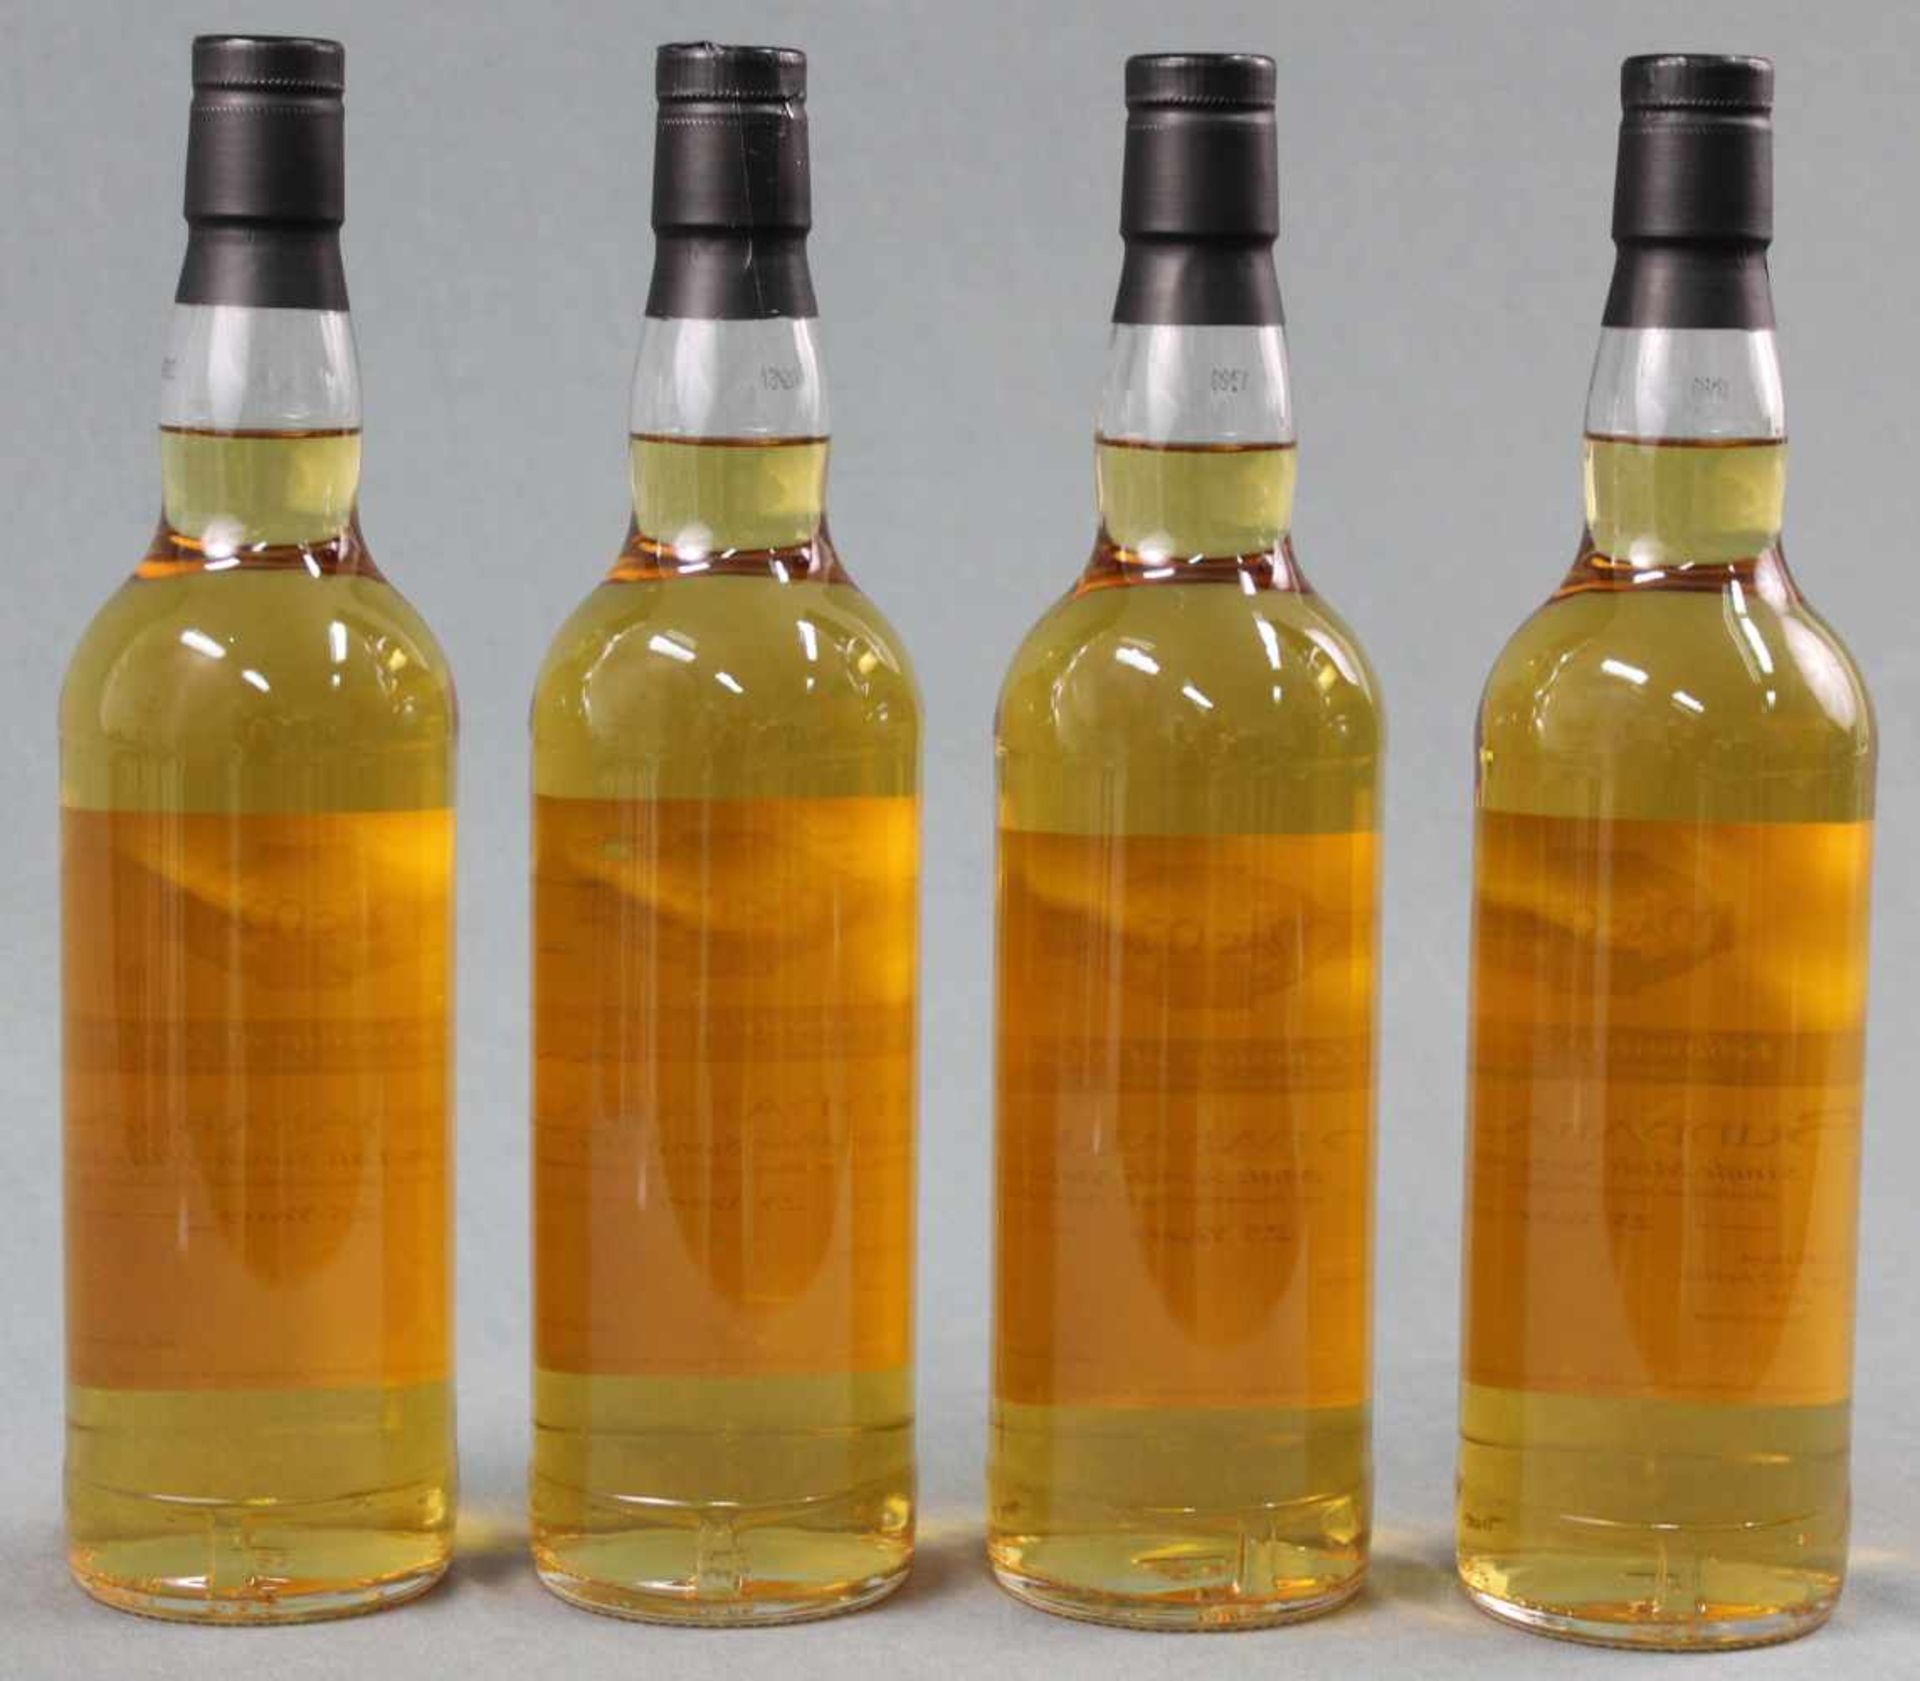 1988 Bunnahabhain Single Malt Scotch Wihisky. 25 years. Distilled 1988, Bottled 2013.MacMalt Esc. - Bild 2 aus 5